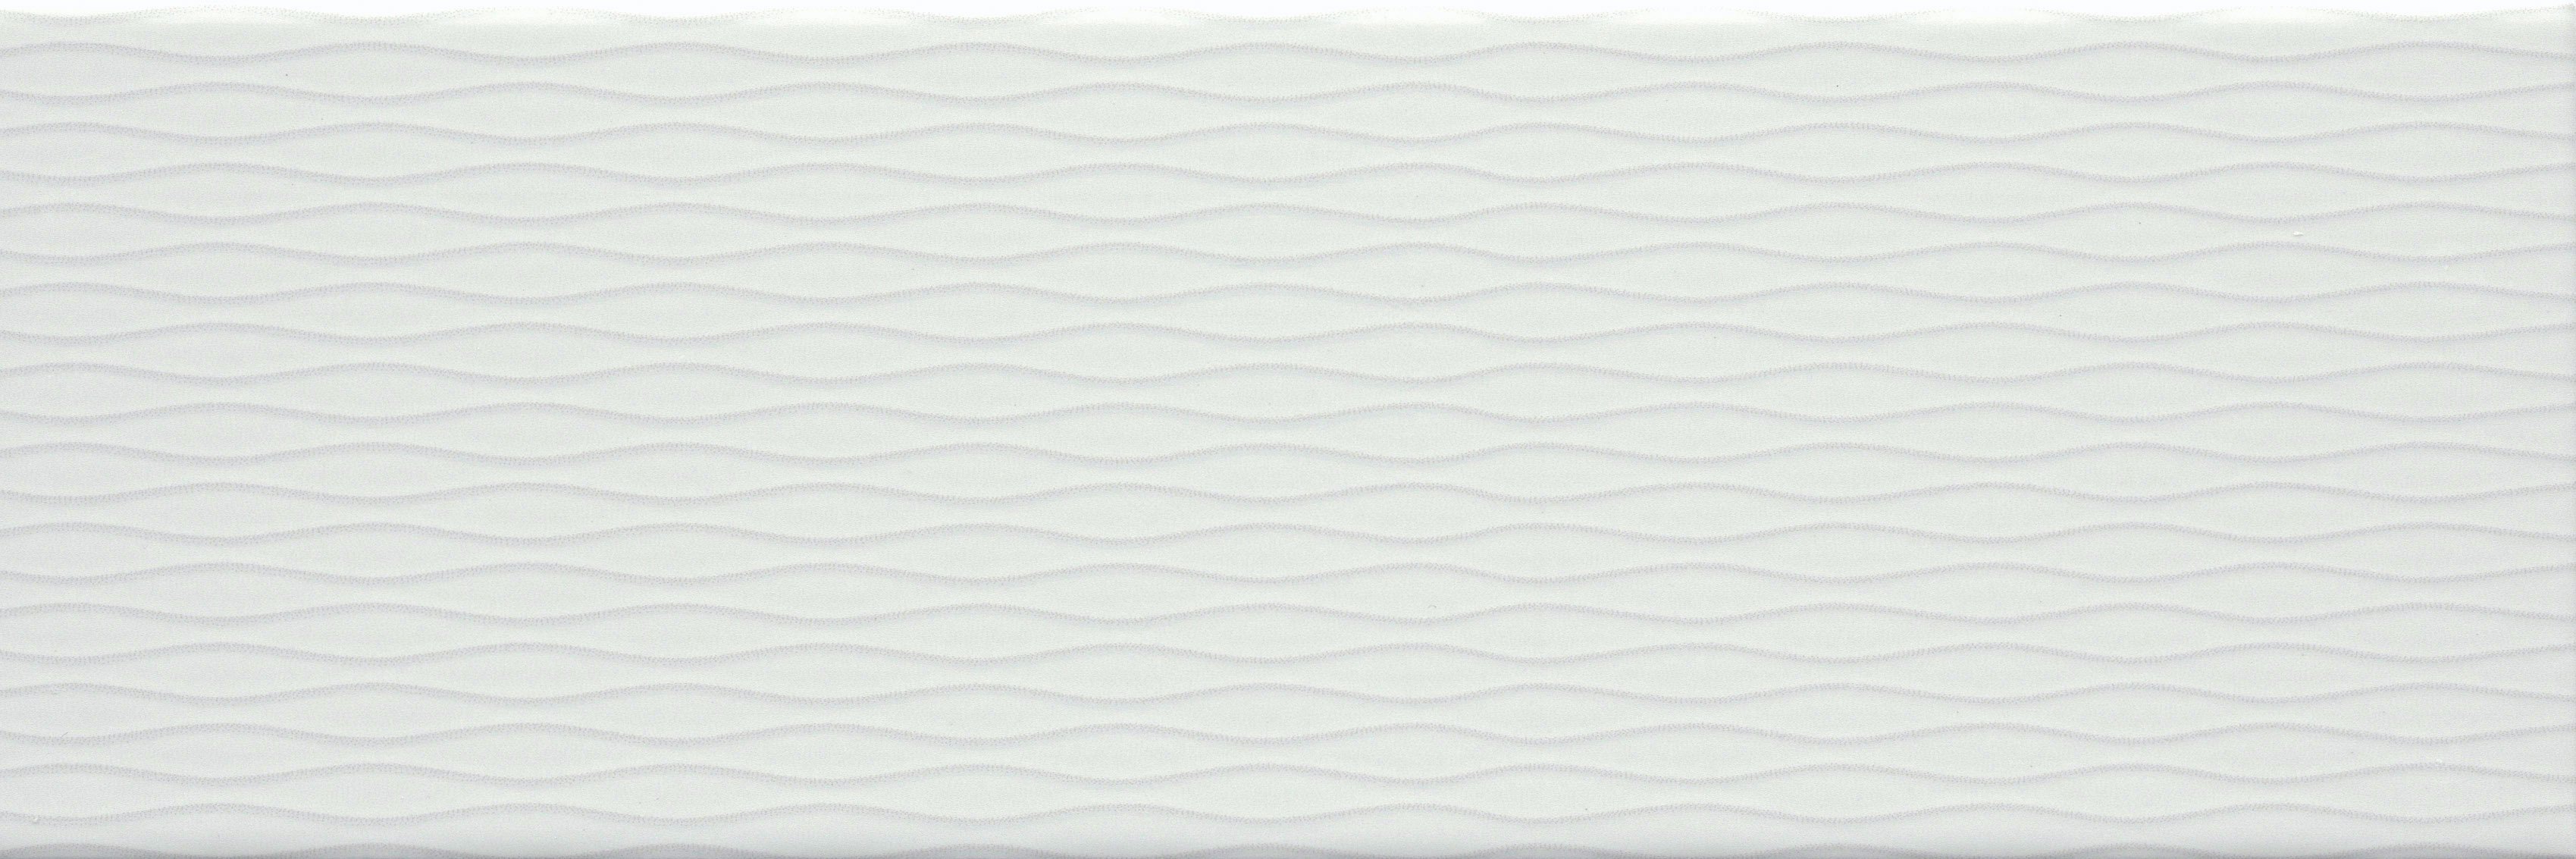 Motif II White 4x12 glazed ceramic tile Emser Tile